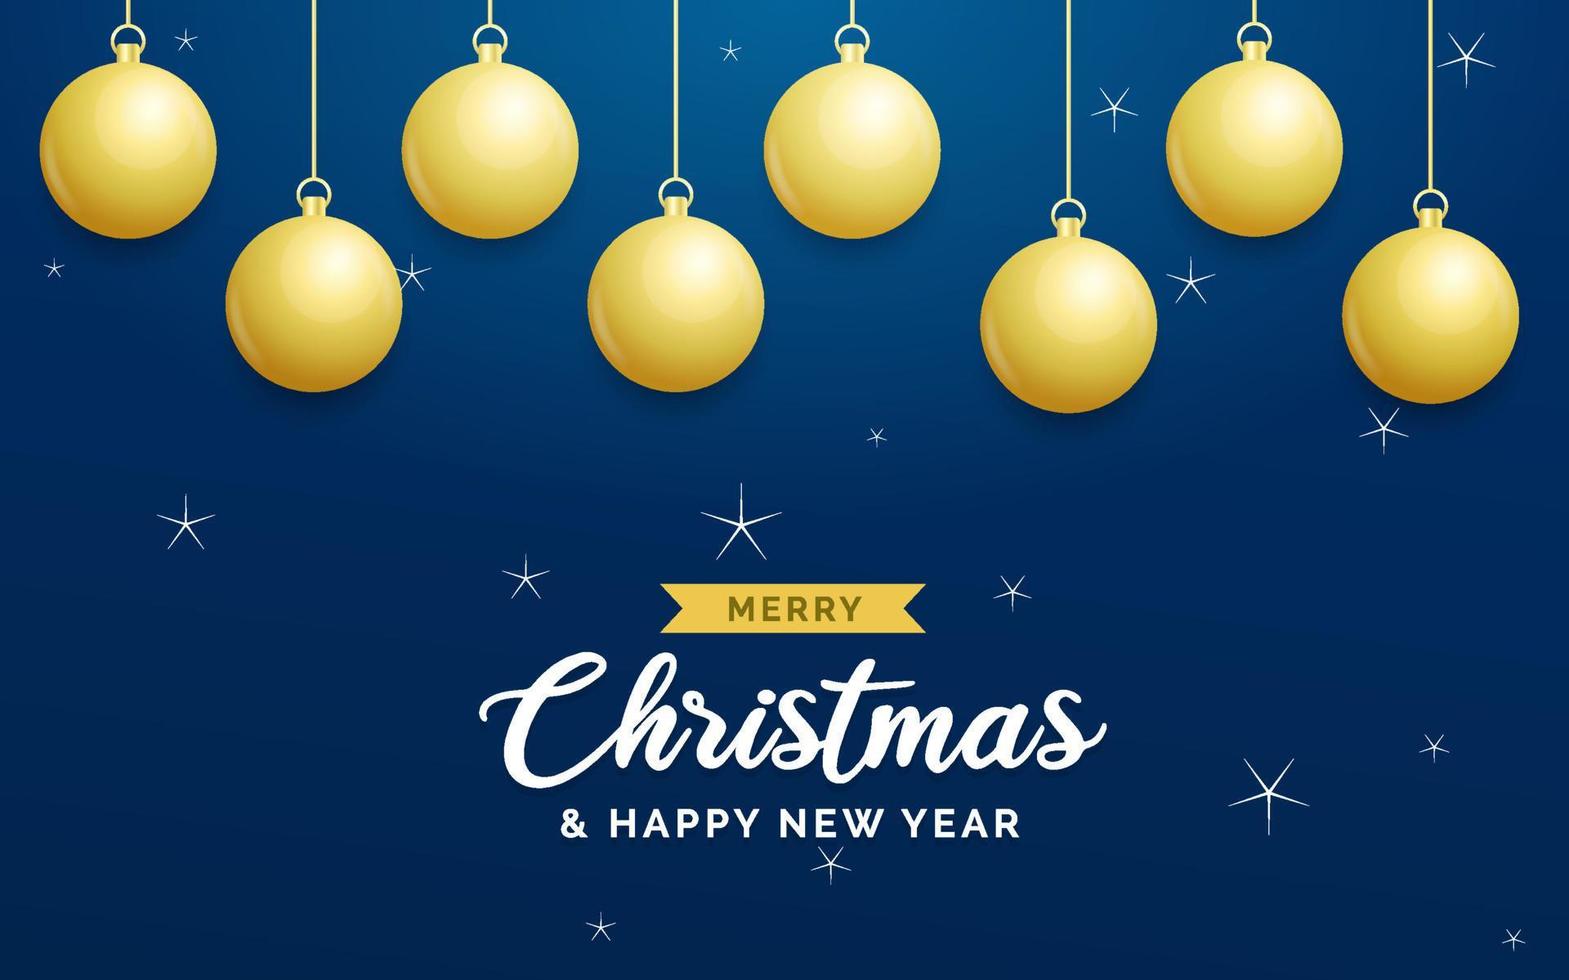 fundo azul de natal com bolas douradas brilhantes penduradas. cartão de feliz natal. feriado natal e cartaz de ano novo. banner da web vetor